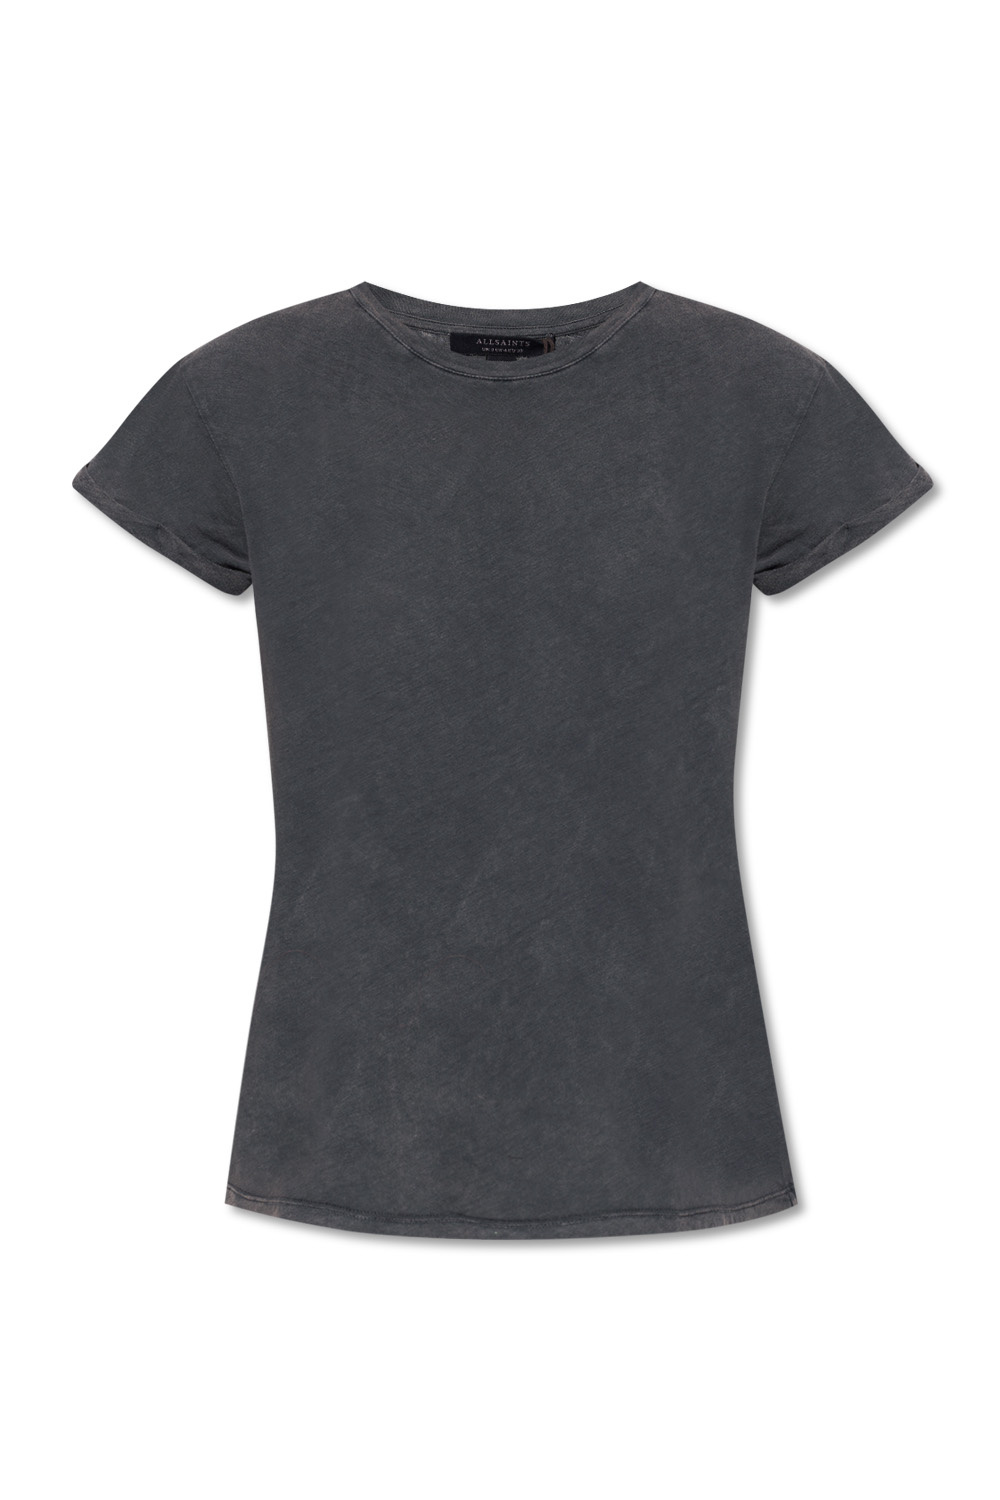 ‘Anna’ T-shirt AllSaints - Vitkac Australia